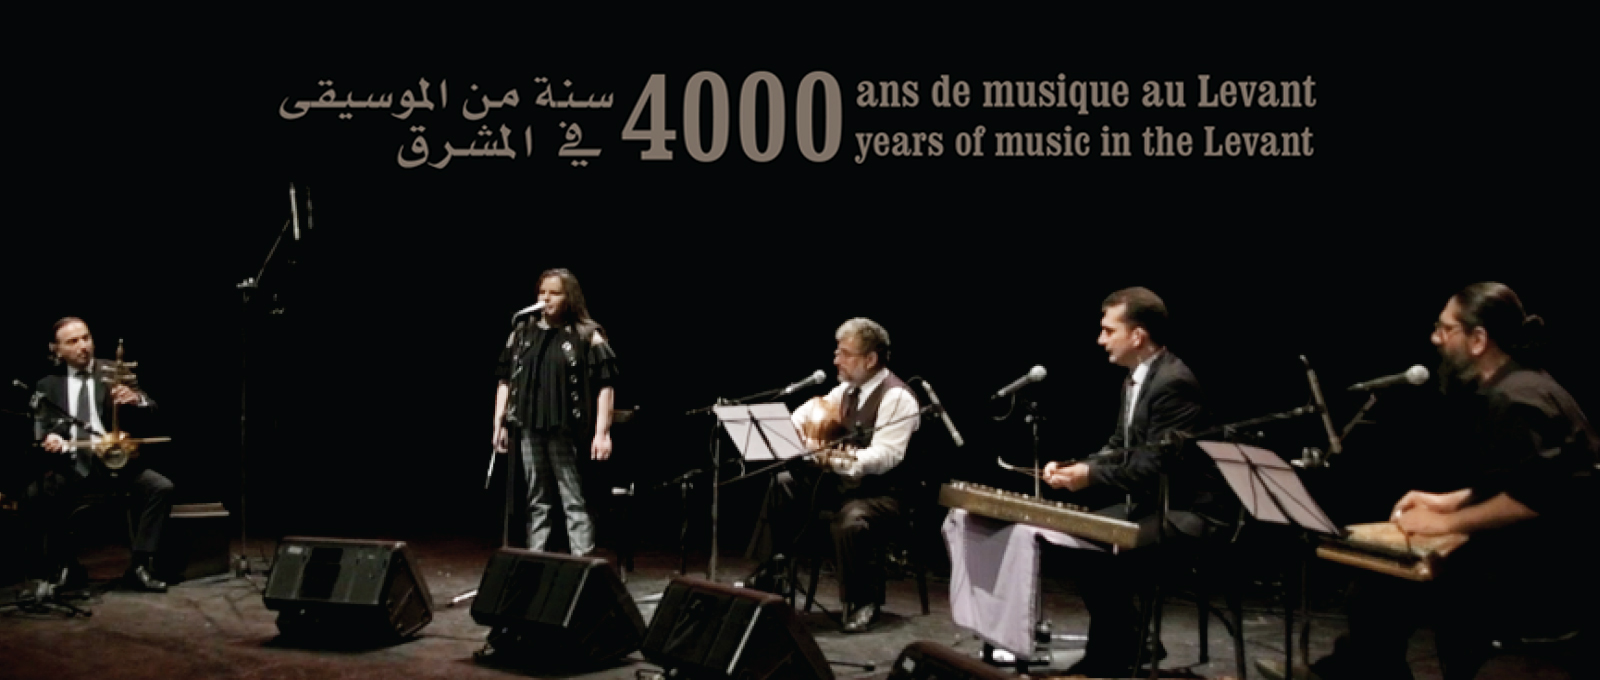 4000 Years of Levantine Music